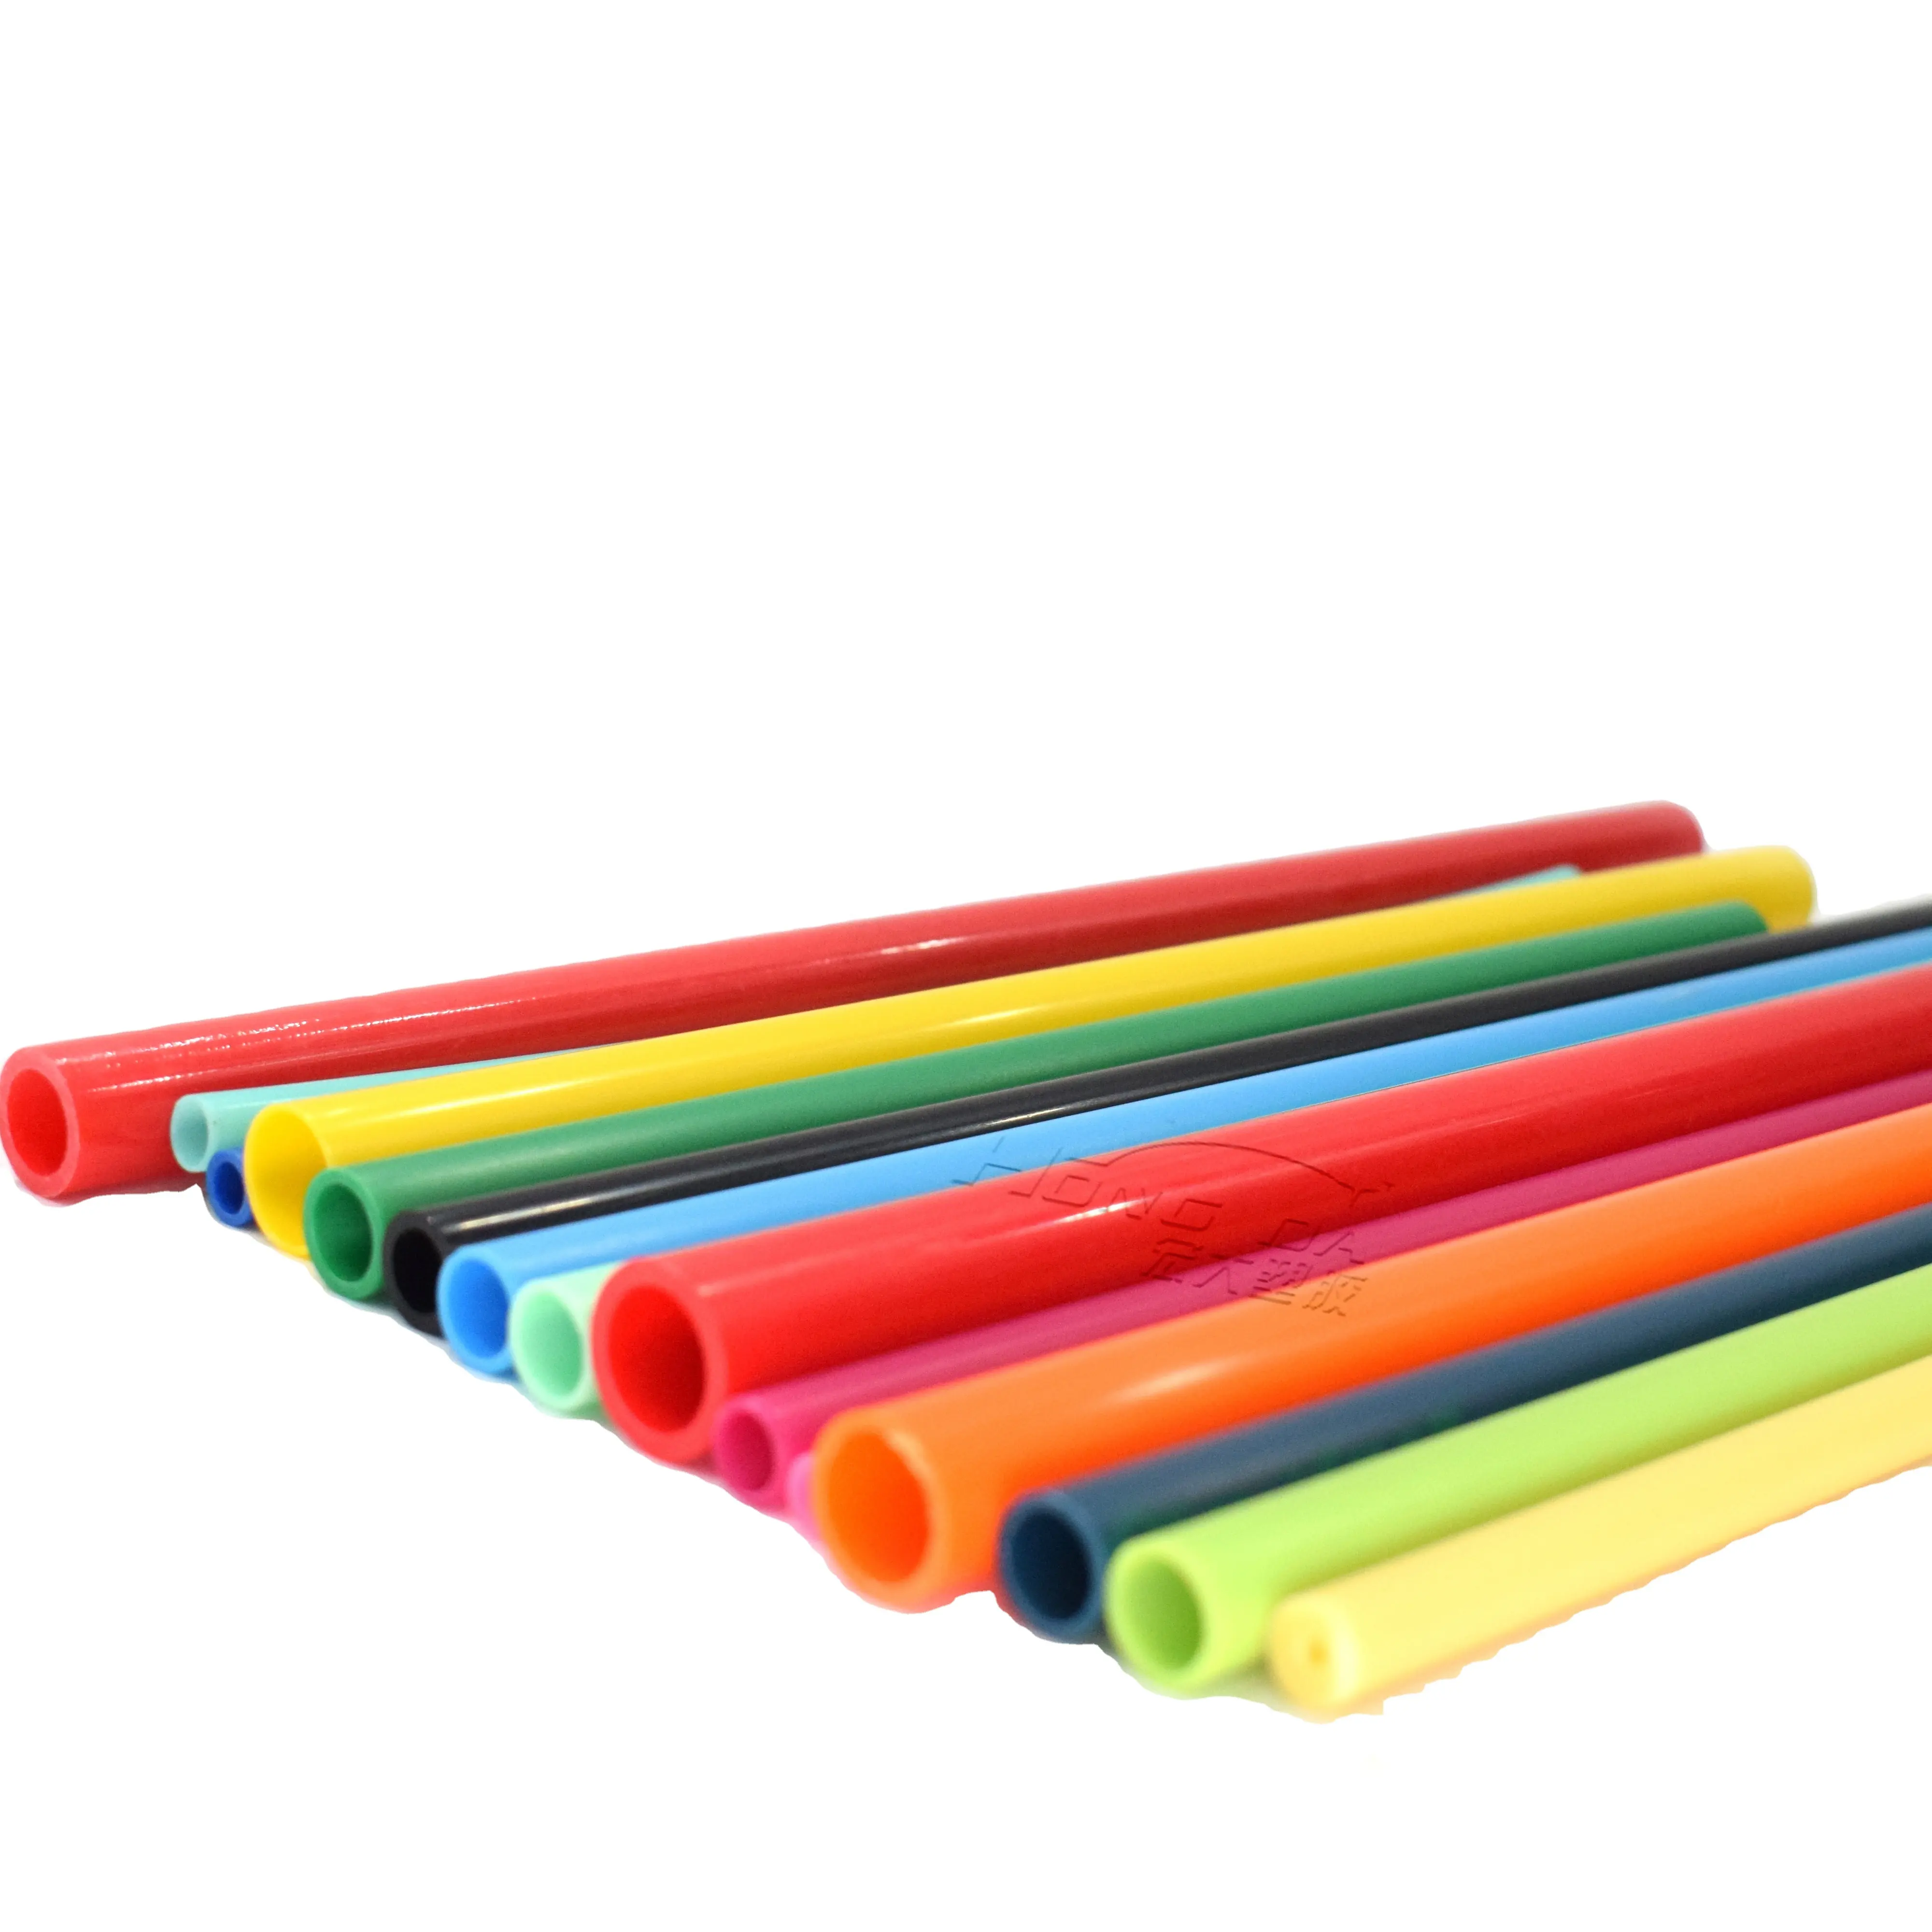 Vendita diretta dalla fabbrica di tubi in ABS di alta qualità tubo giocattolo di plastica profilo in PVC tubi giocattolo